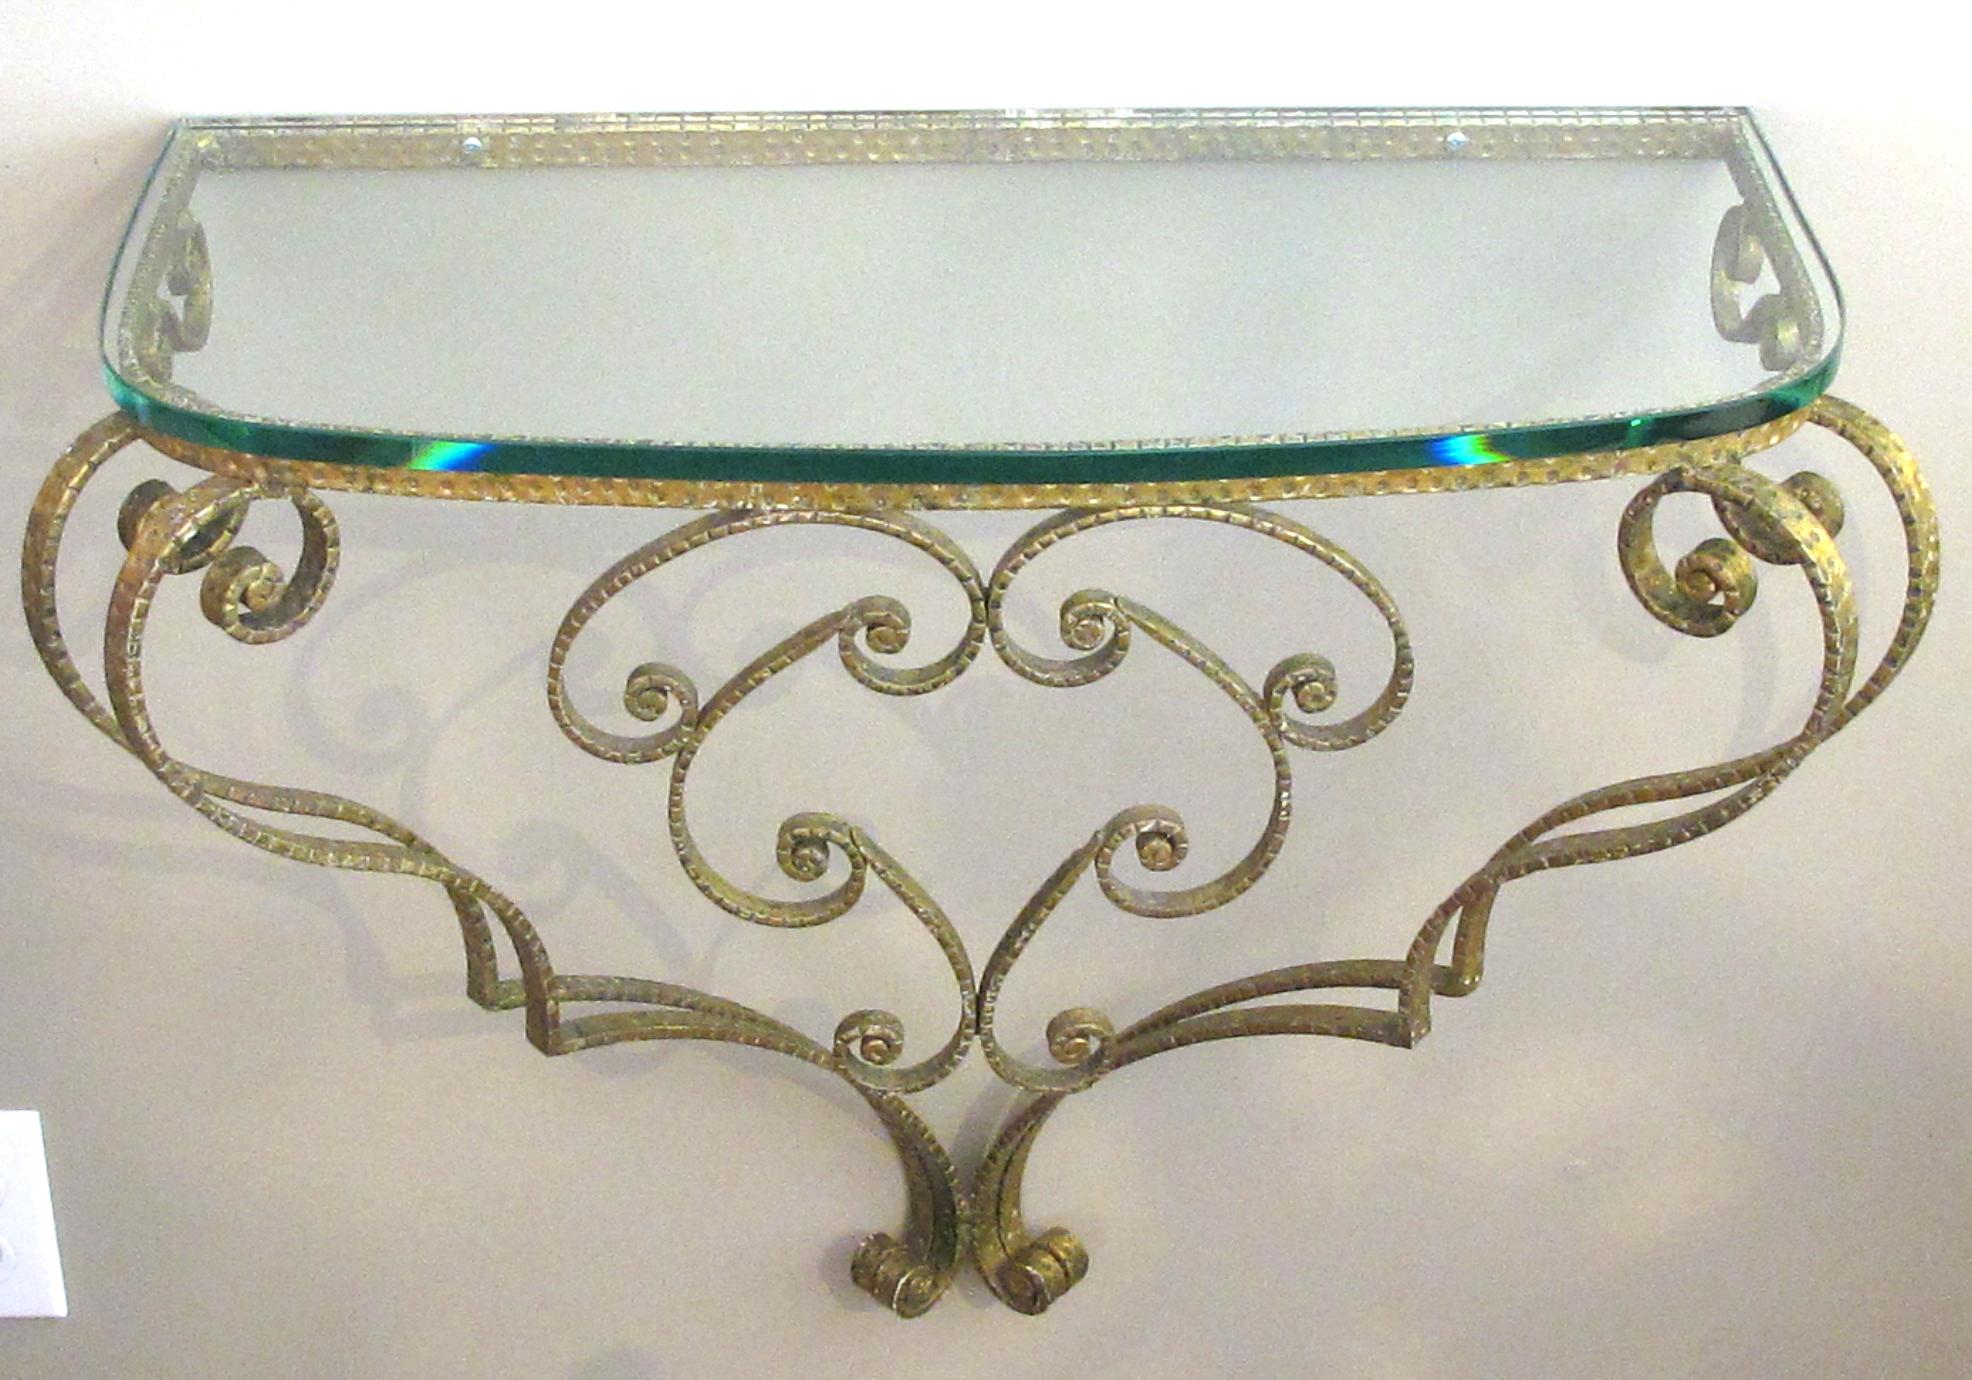 Ein schicker italienischer Konsolentisch und Spiegel aus vergoldetem Eisen von Pier Luigi Colli (1895-1968) aus den 1940er Jahren; großartiges italienisches Design, der ovale Spiegel hat einen verschnörkelten Rahmen aus vergoldetem Eisen und steht